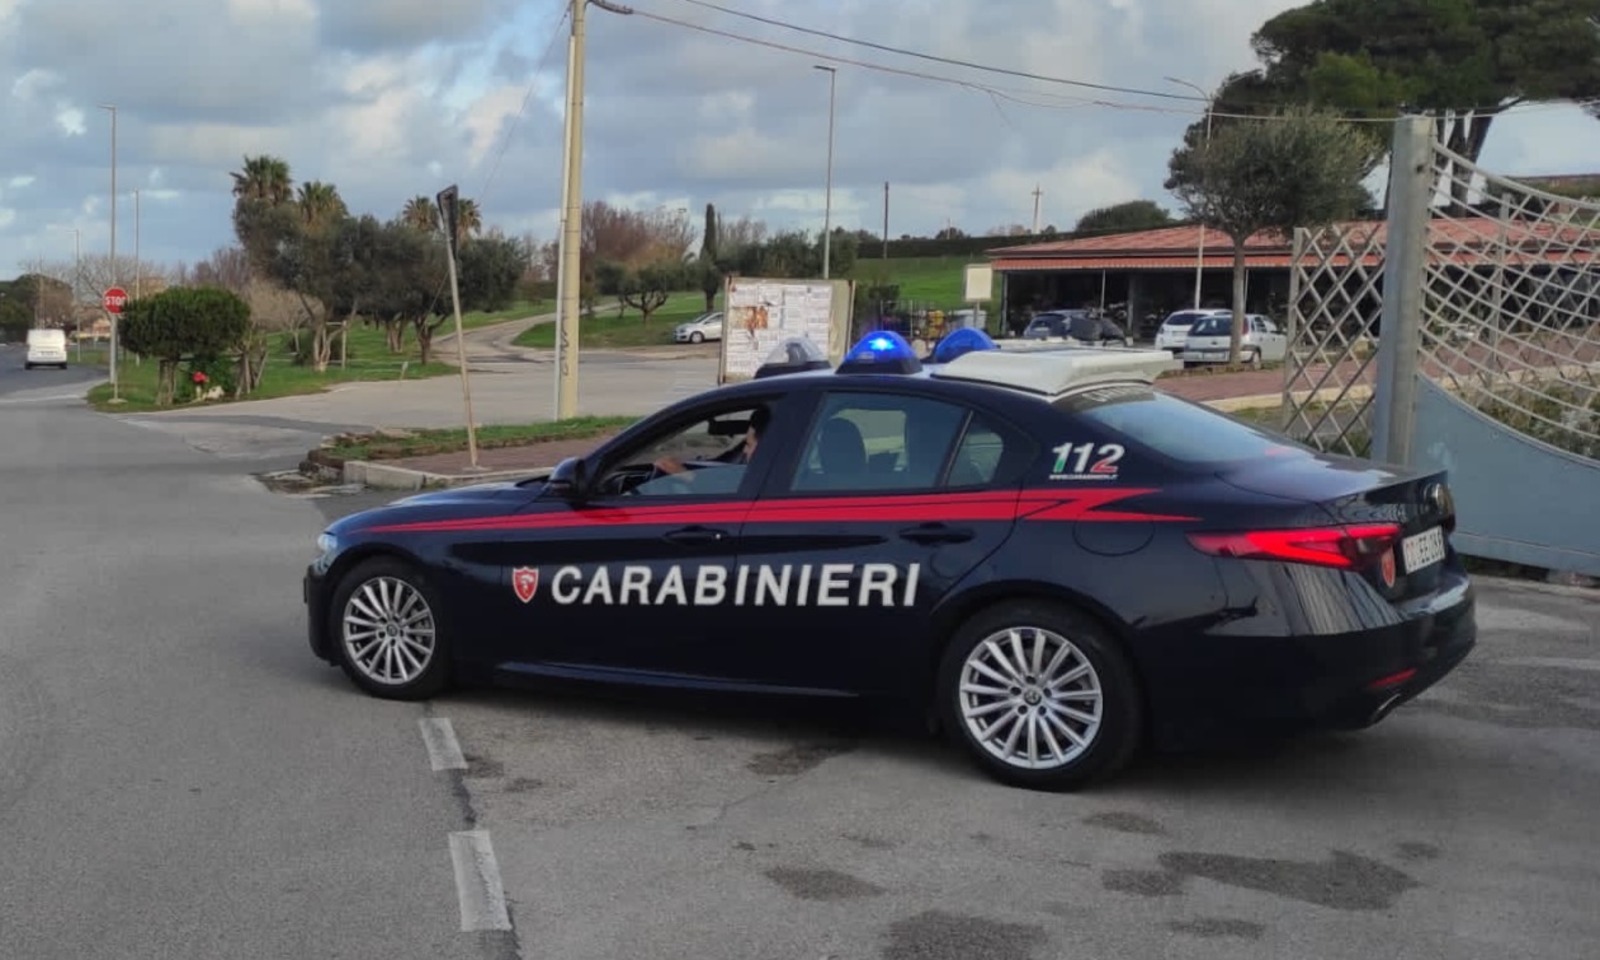 Carabinieri ad Anzio per una lite scoprono la droga